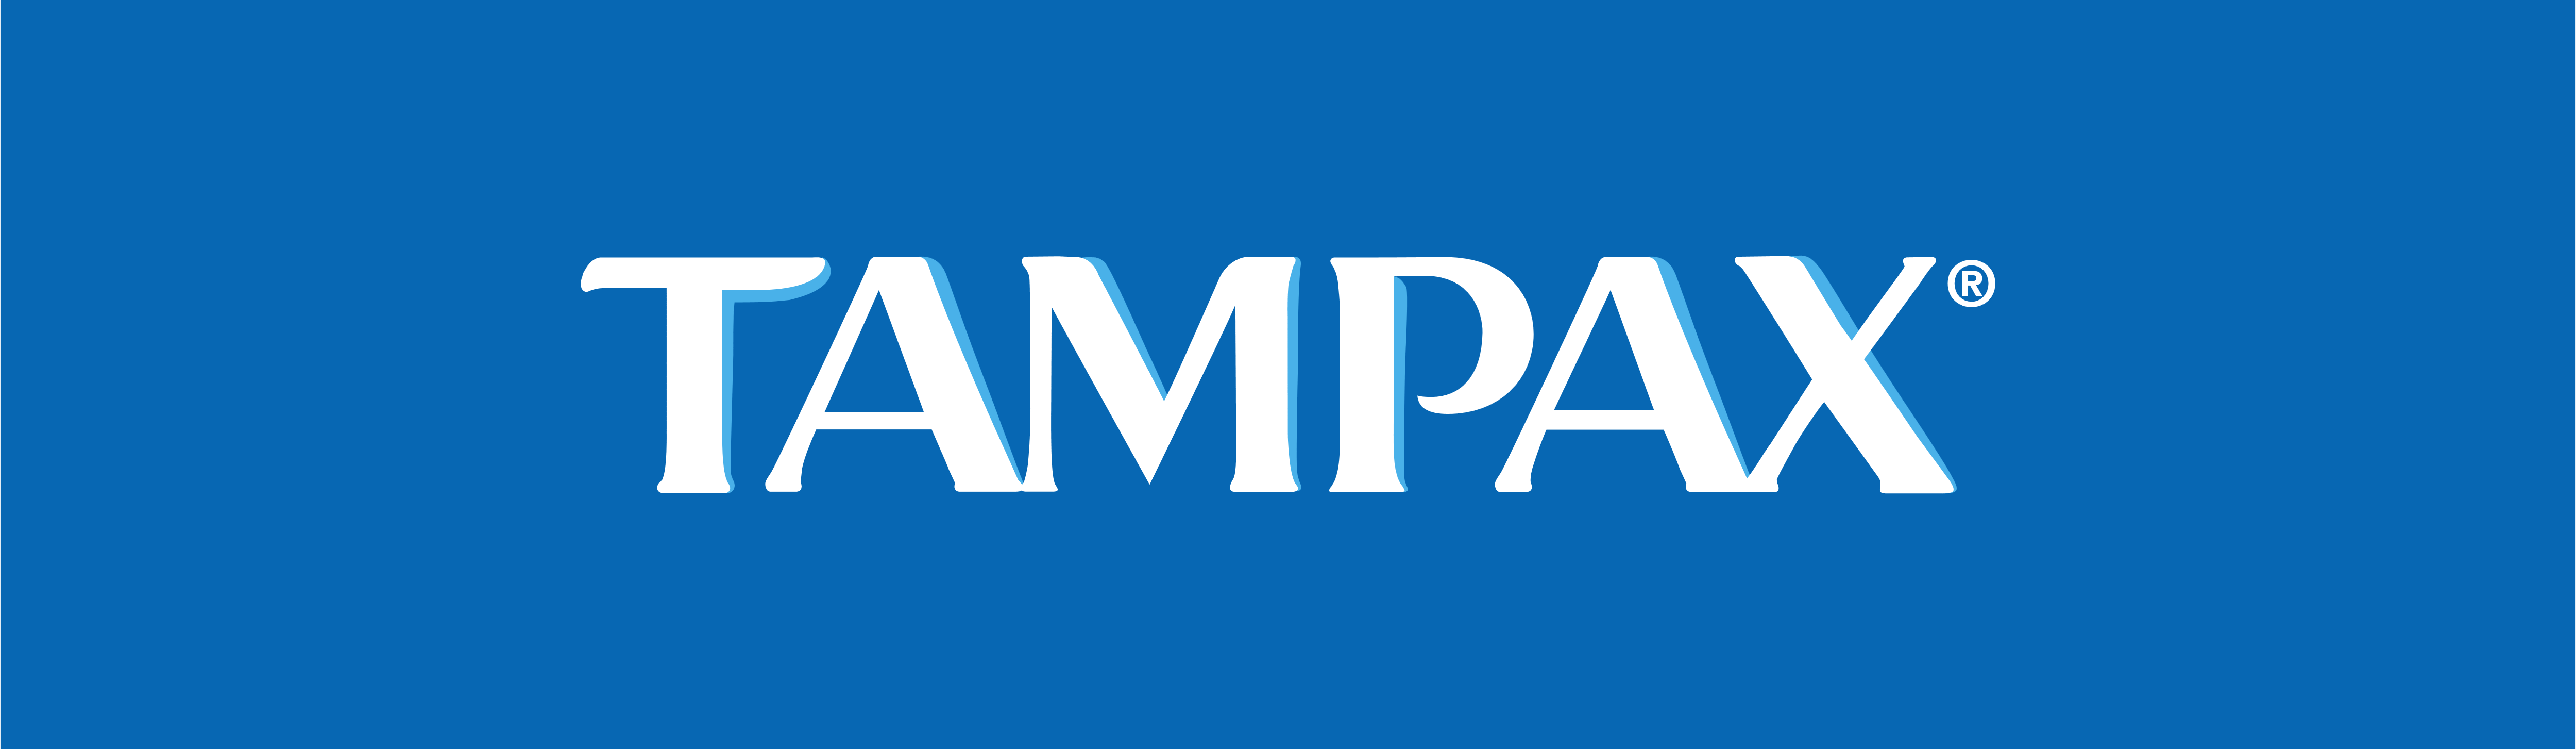 Tampax Logo - Tampax – Logos Download